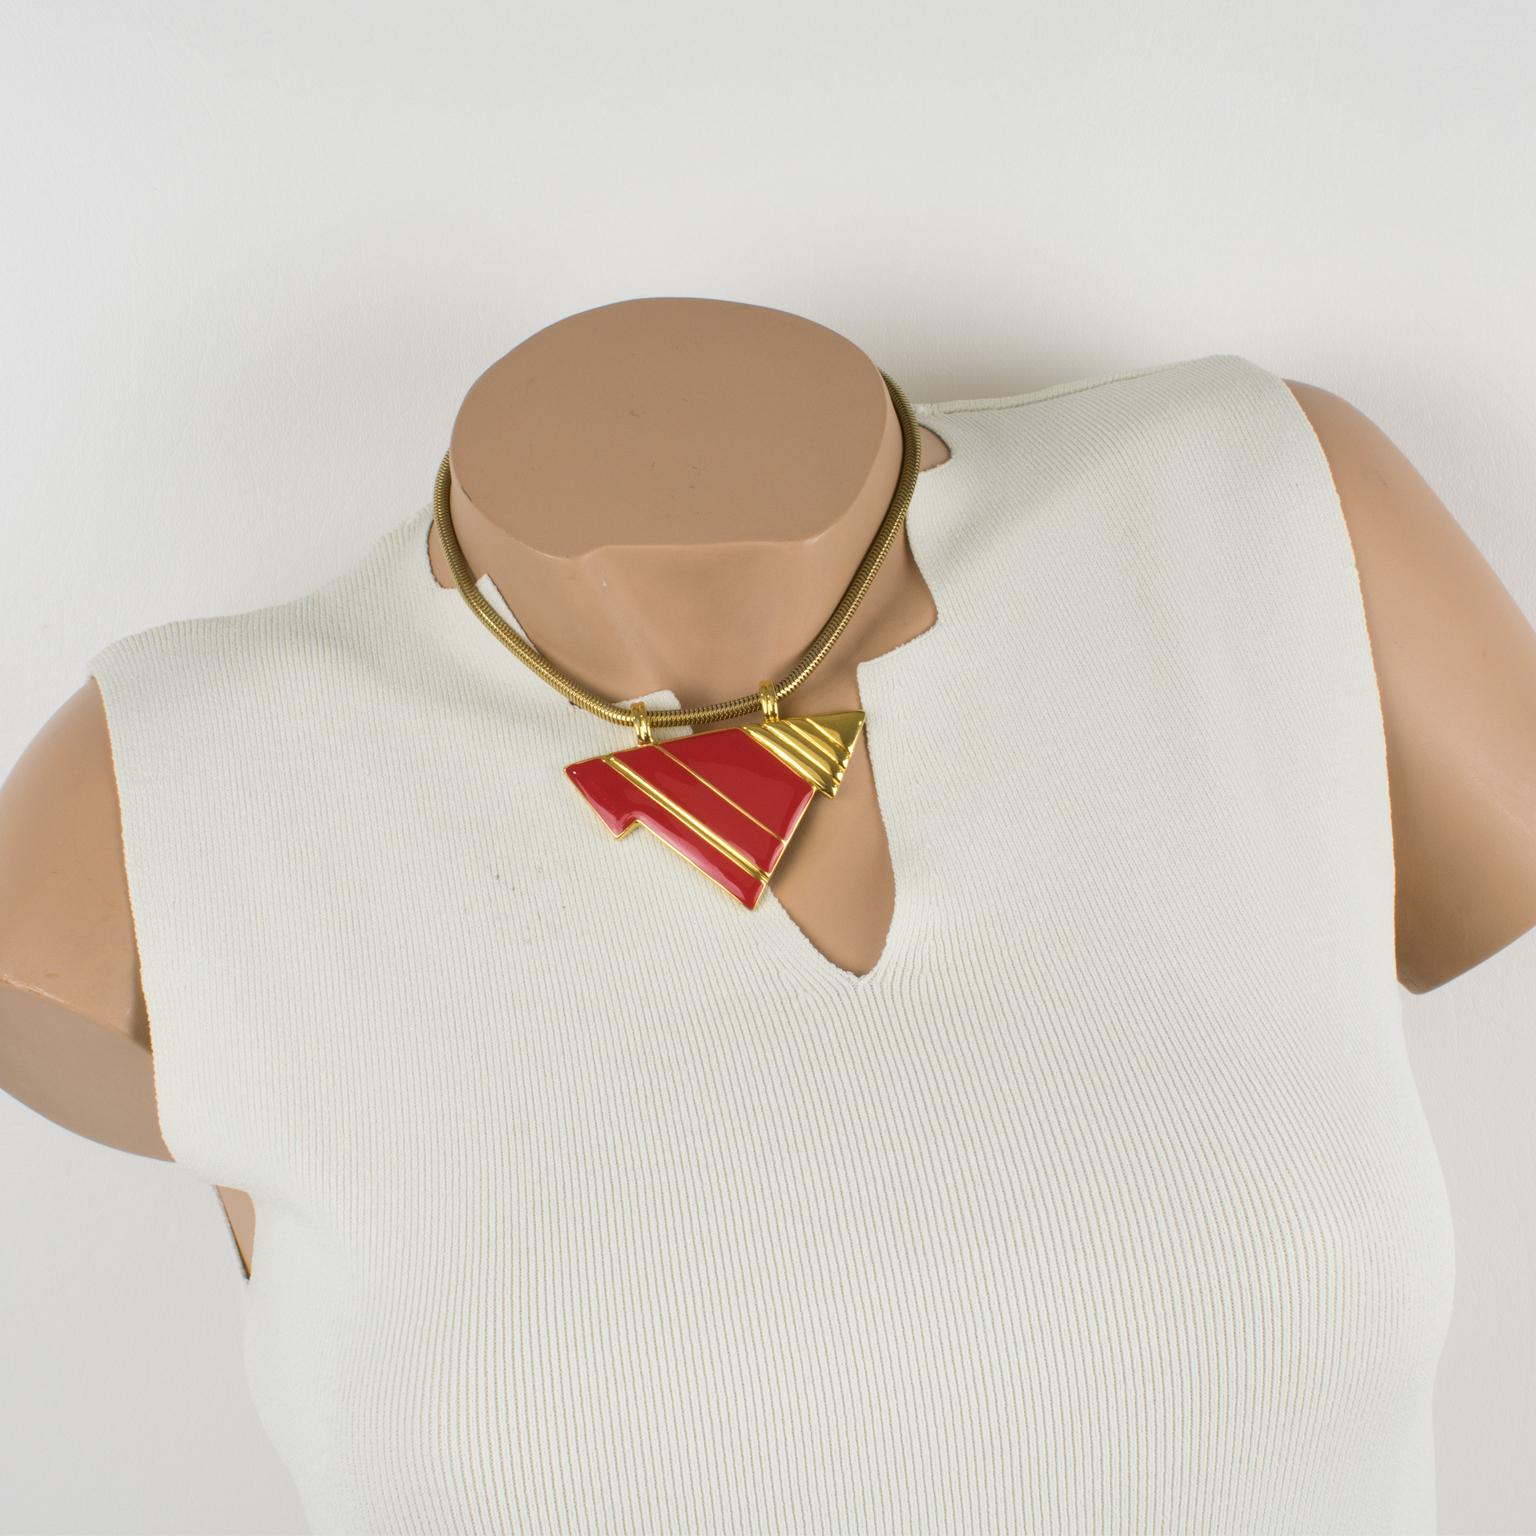 Ce ravissant collier ras-de-cou moderniste de Lanvin Paris se compose d'une chaîne serpentine en métal doré ornée d'un pendentif géométrique en métal doré brillant et en émail rouge. Le collier est muni d'un fermoir à anneau à ressort et est signé